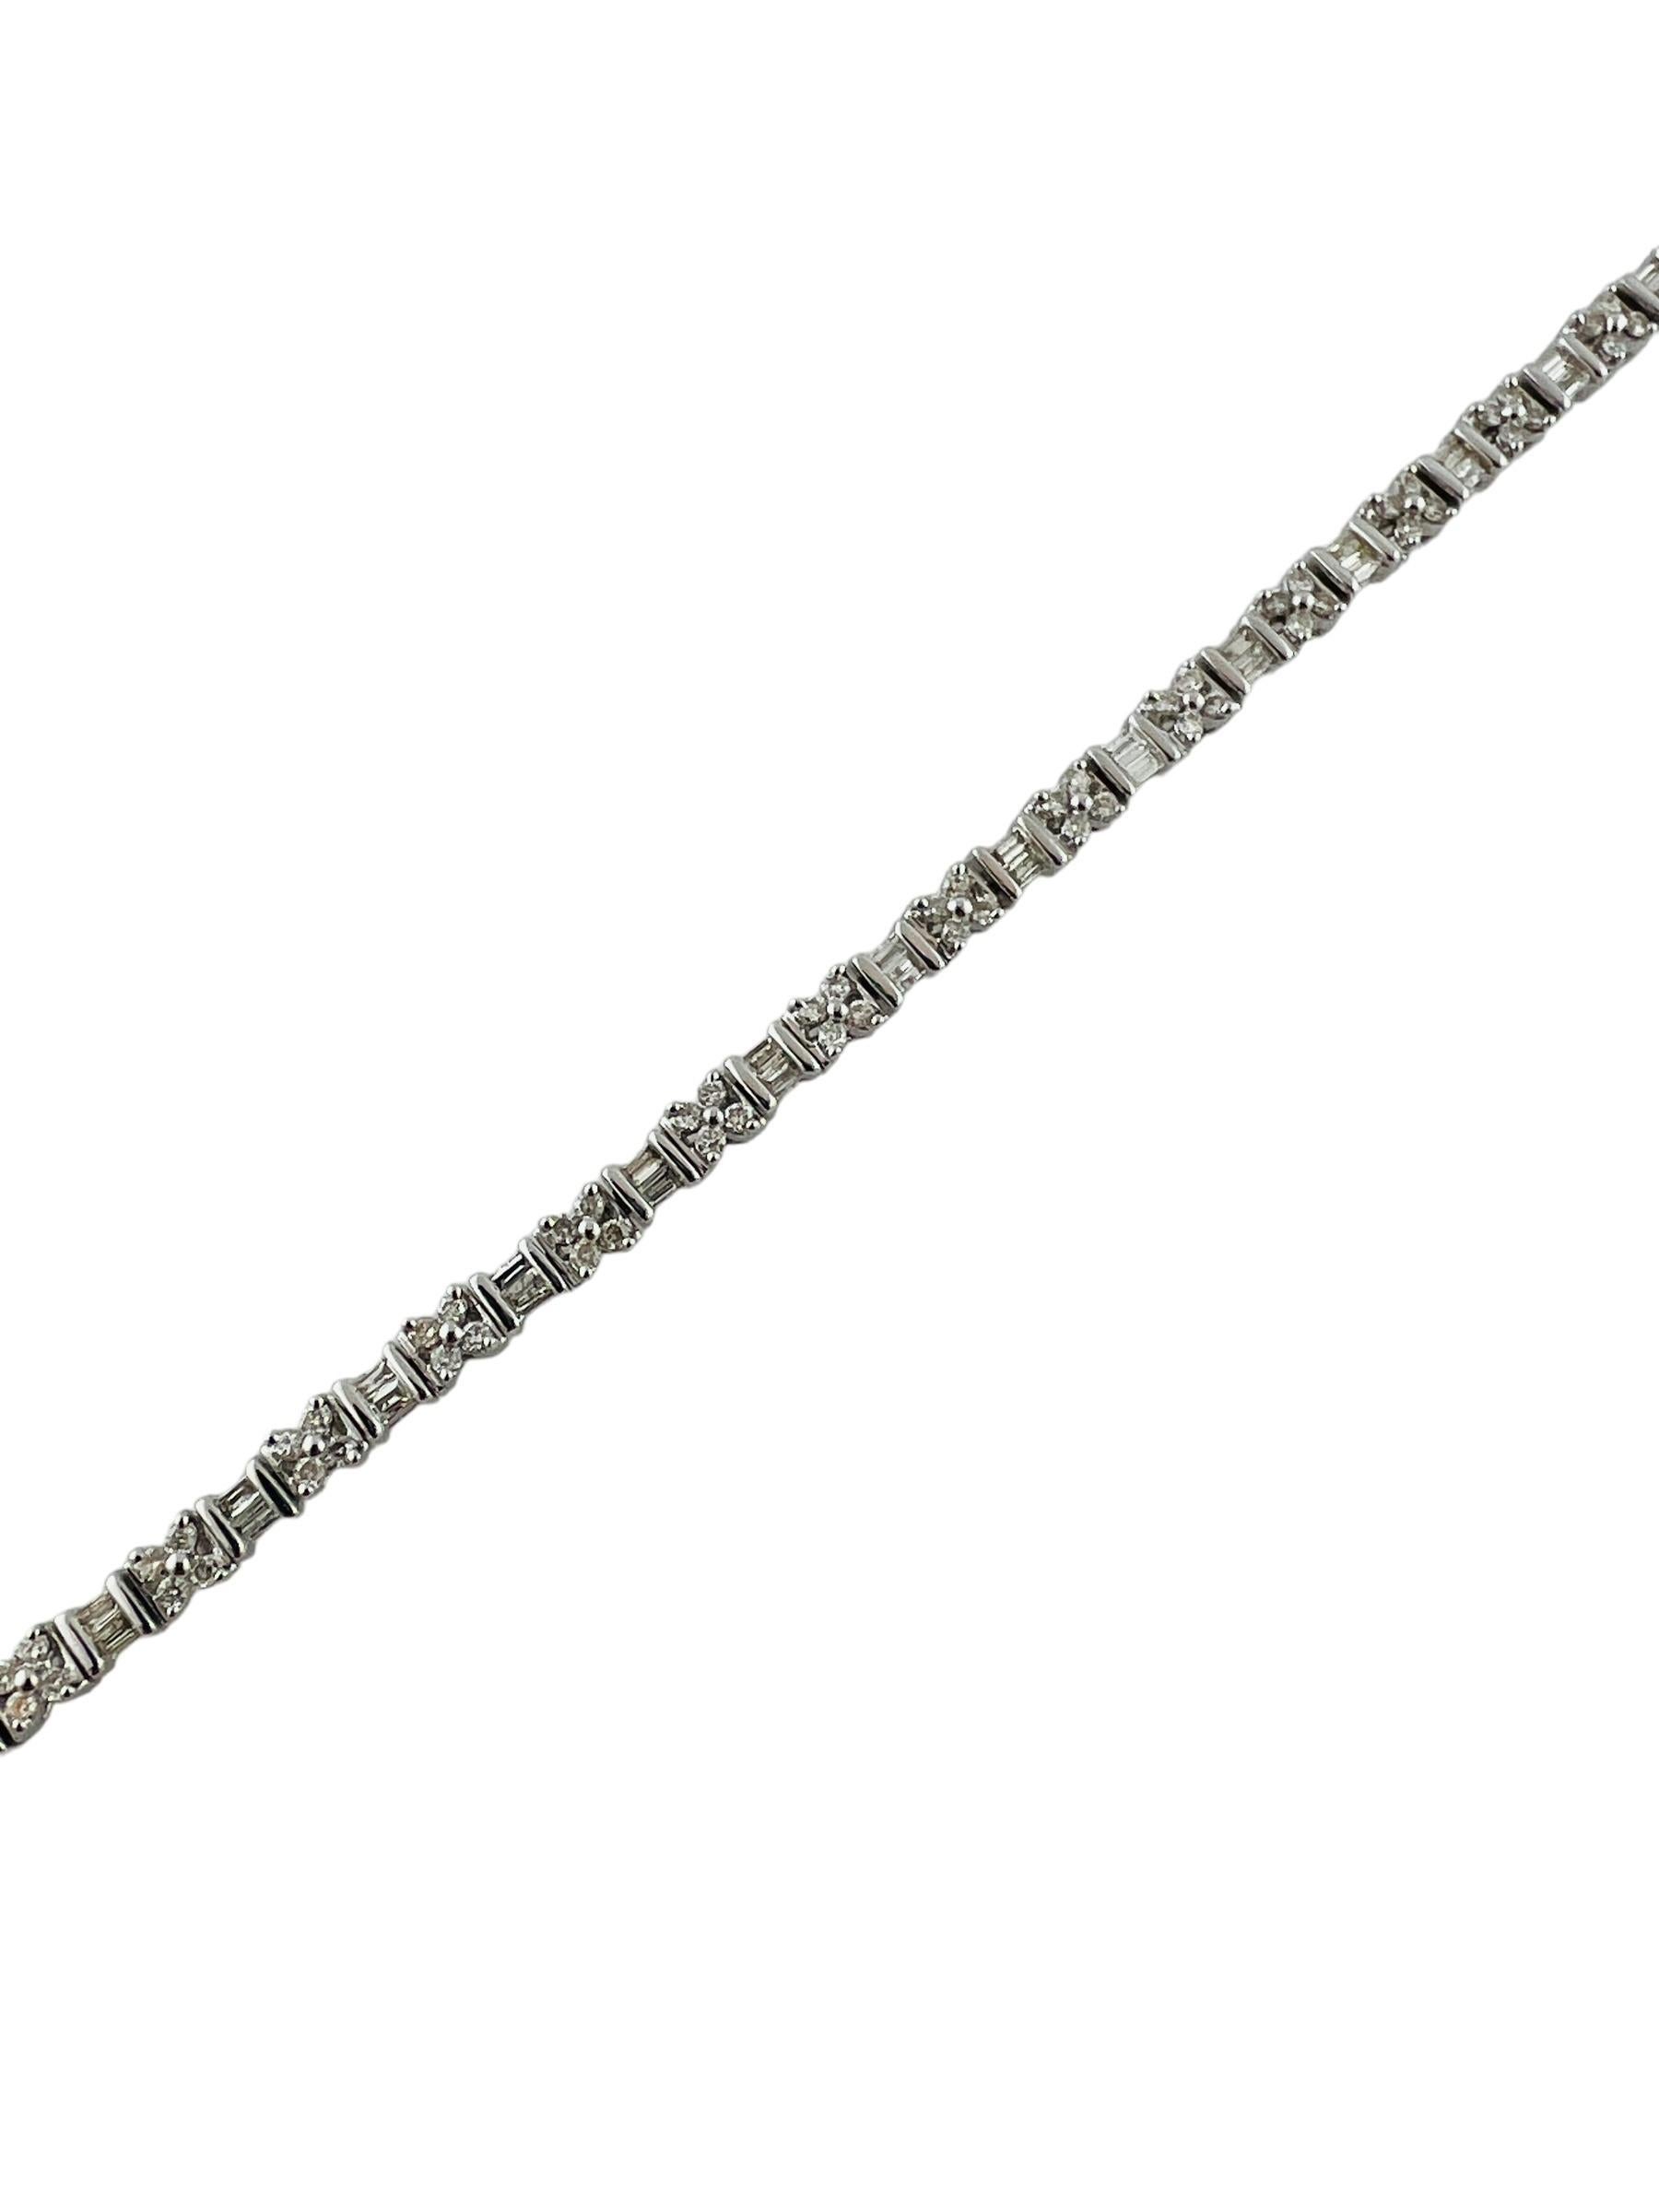 Brilliant Cut 14K White Gold Diamond Tennis Bracelet Floral Accents #16543 For Sale